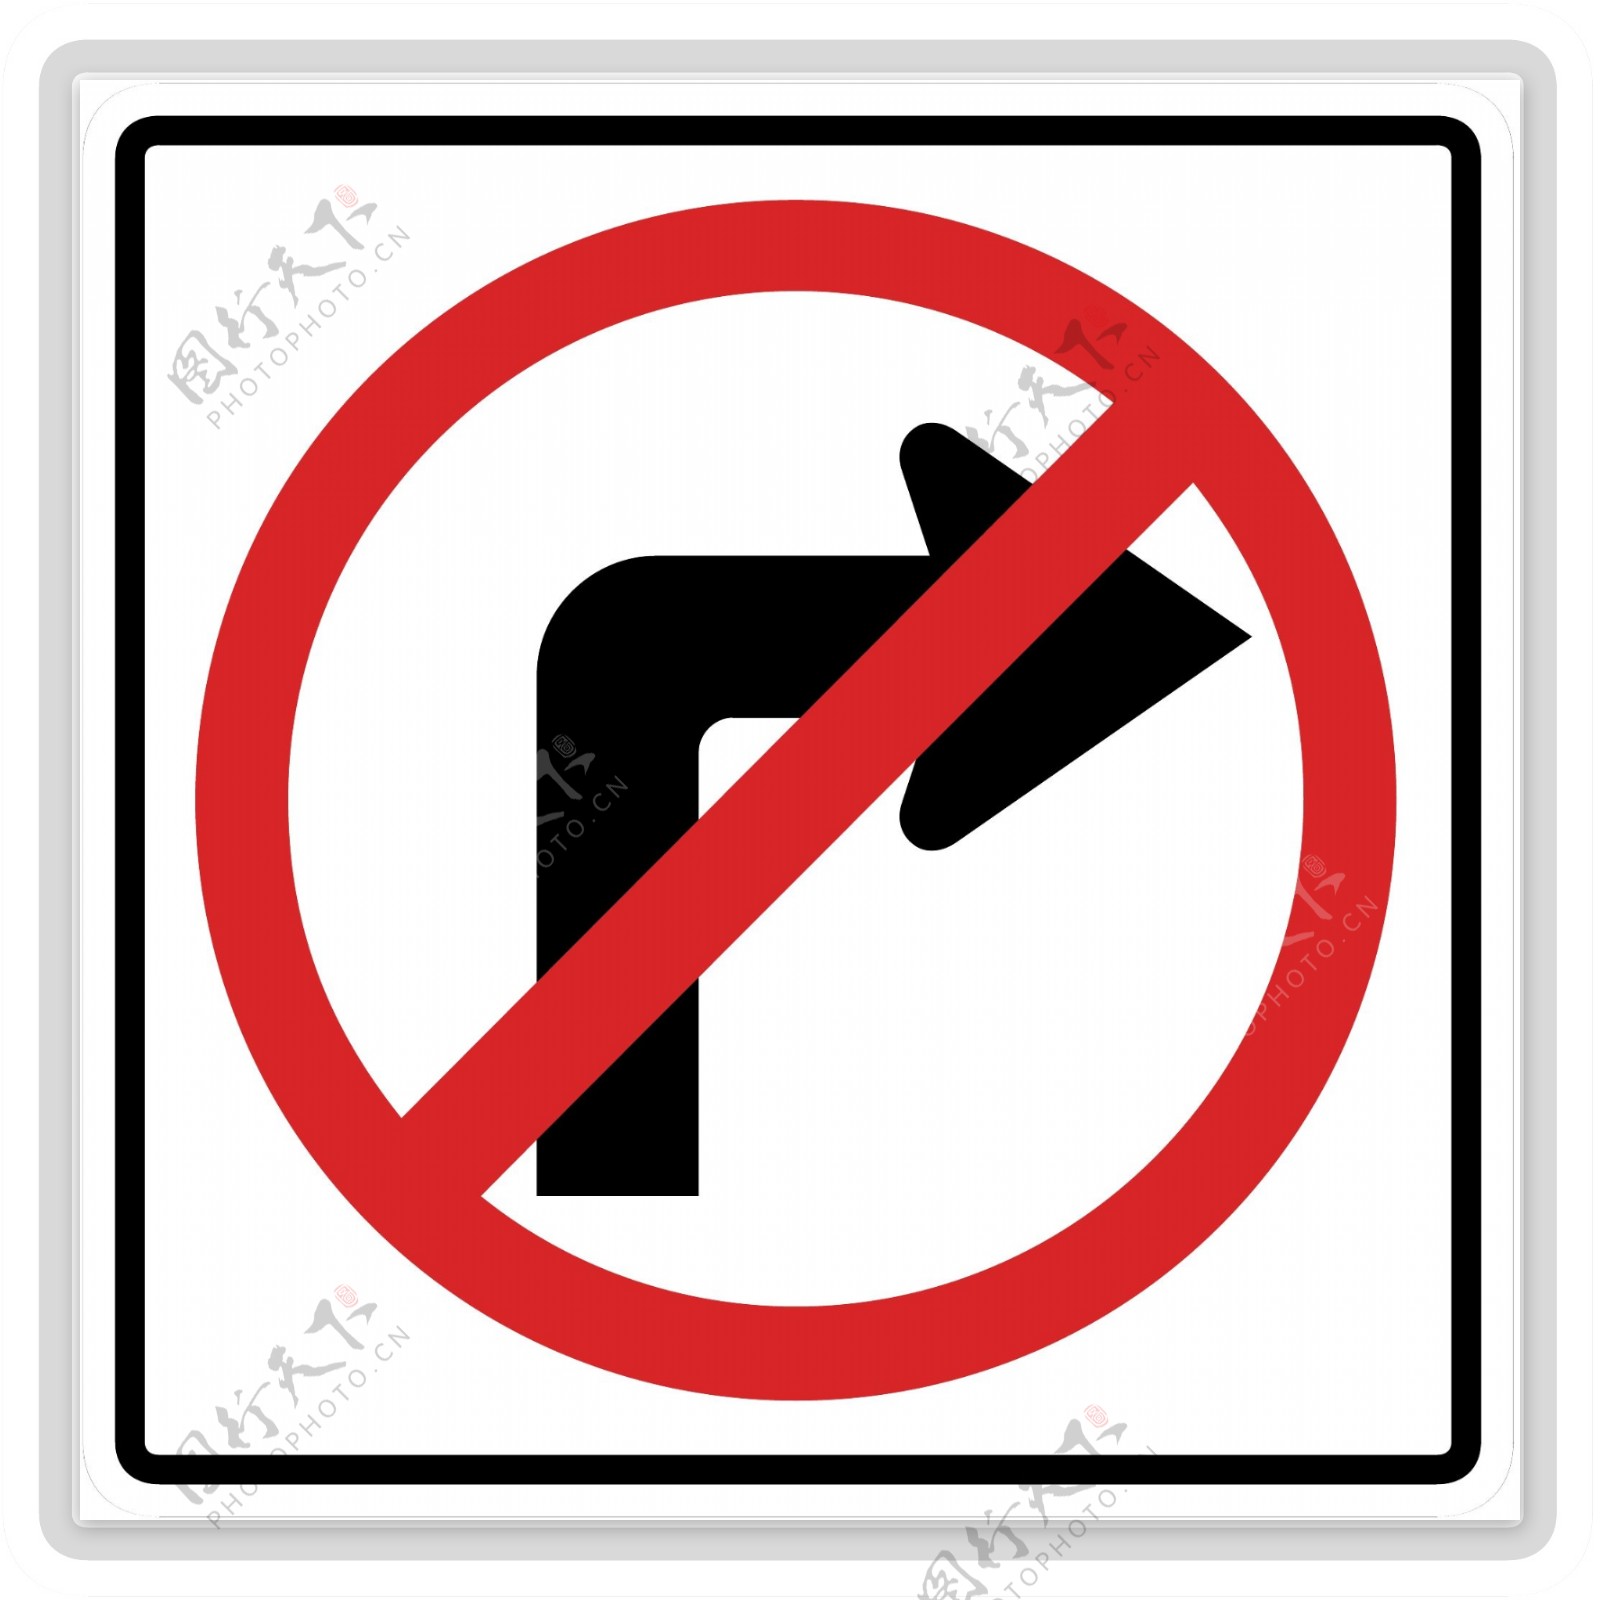 交通图标系列禁止右转图标